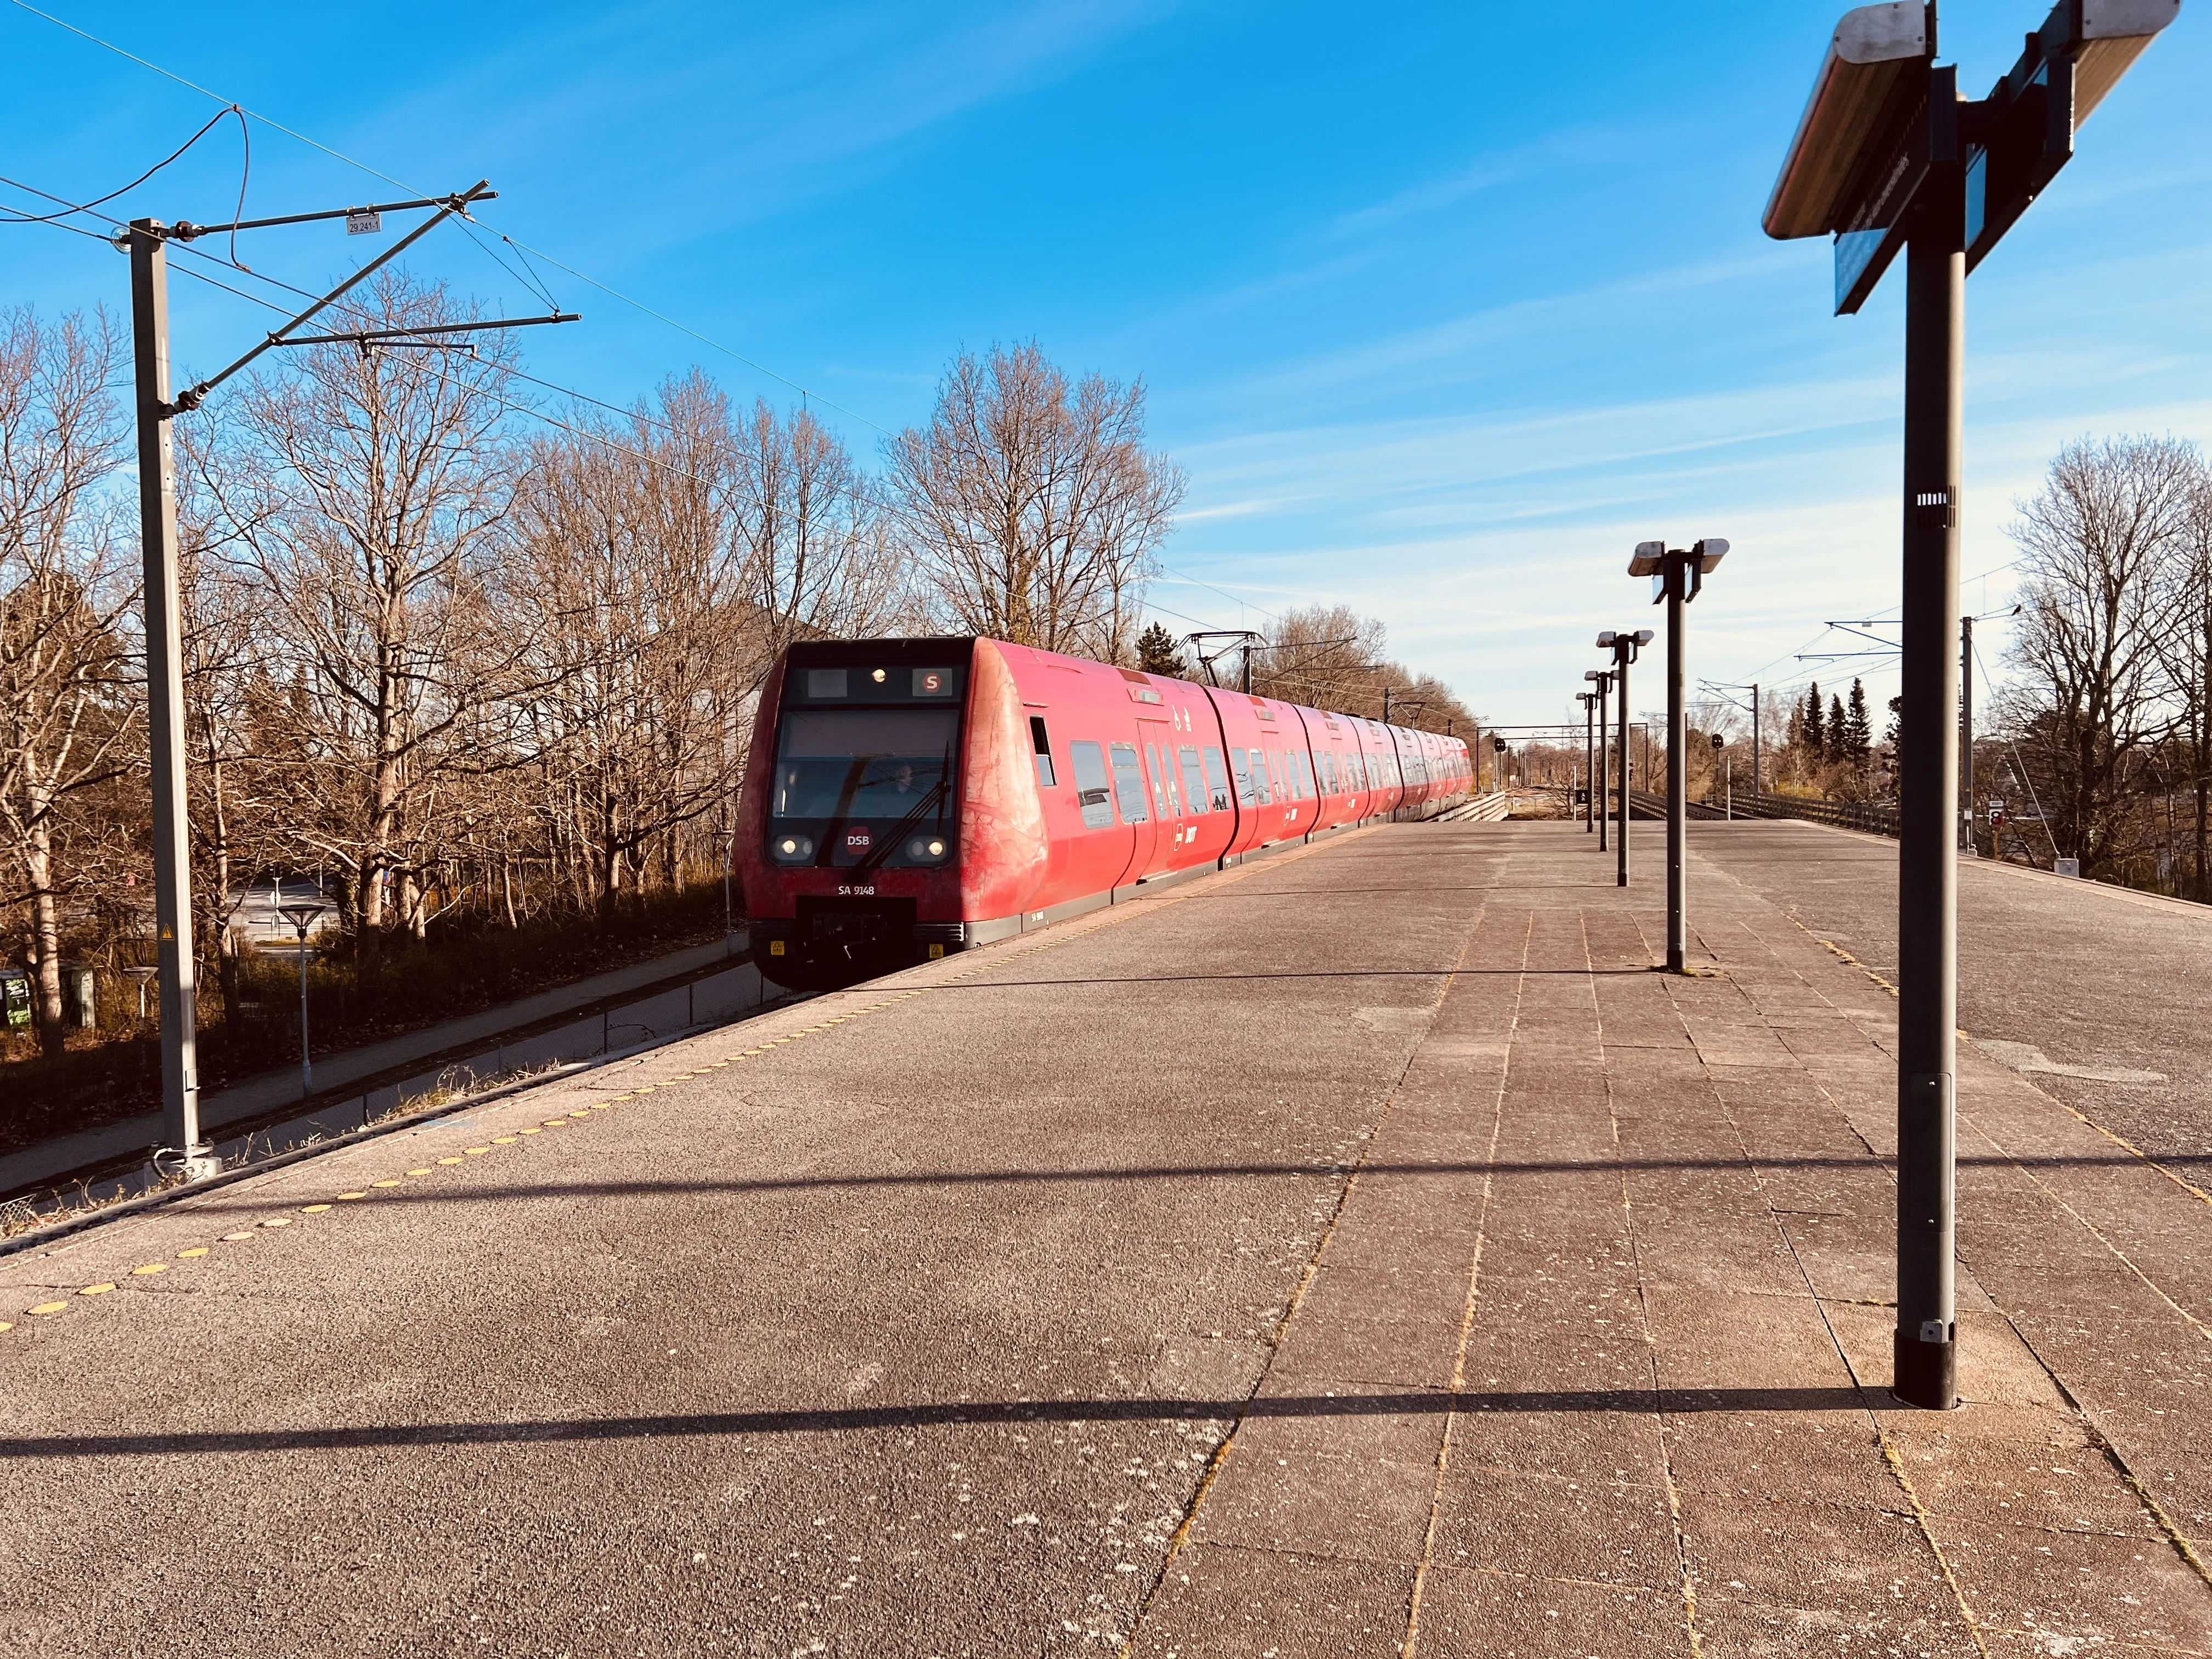 Billede af DSB SA 8148 fotograferet ud for Solrød Strand S-togstrinbræt.